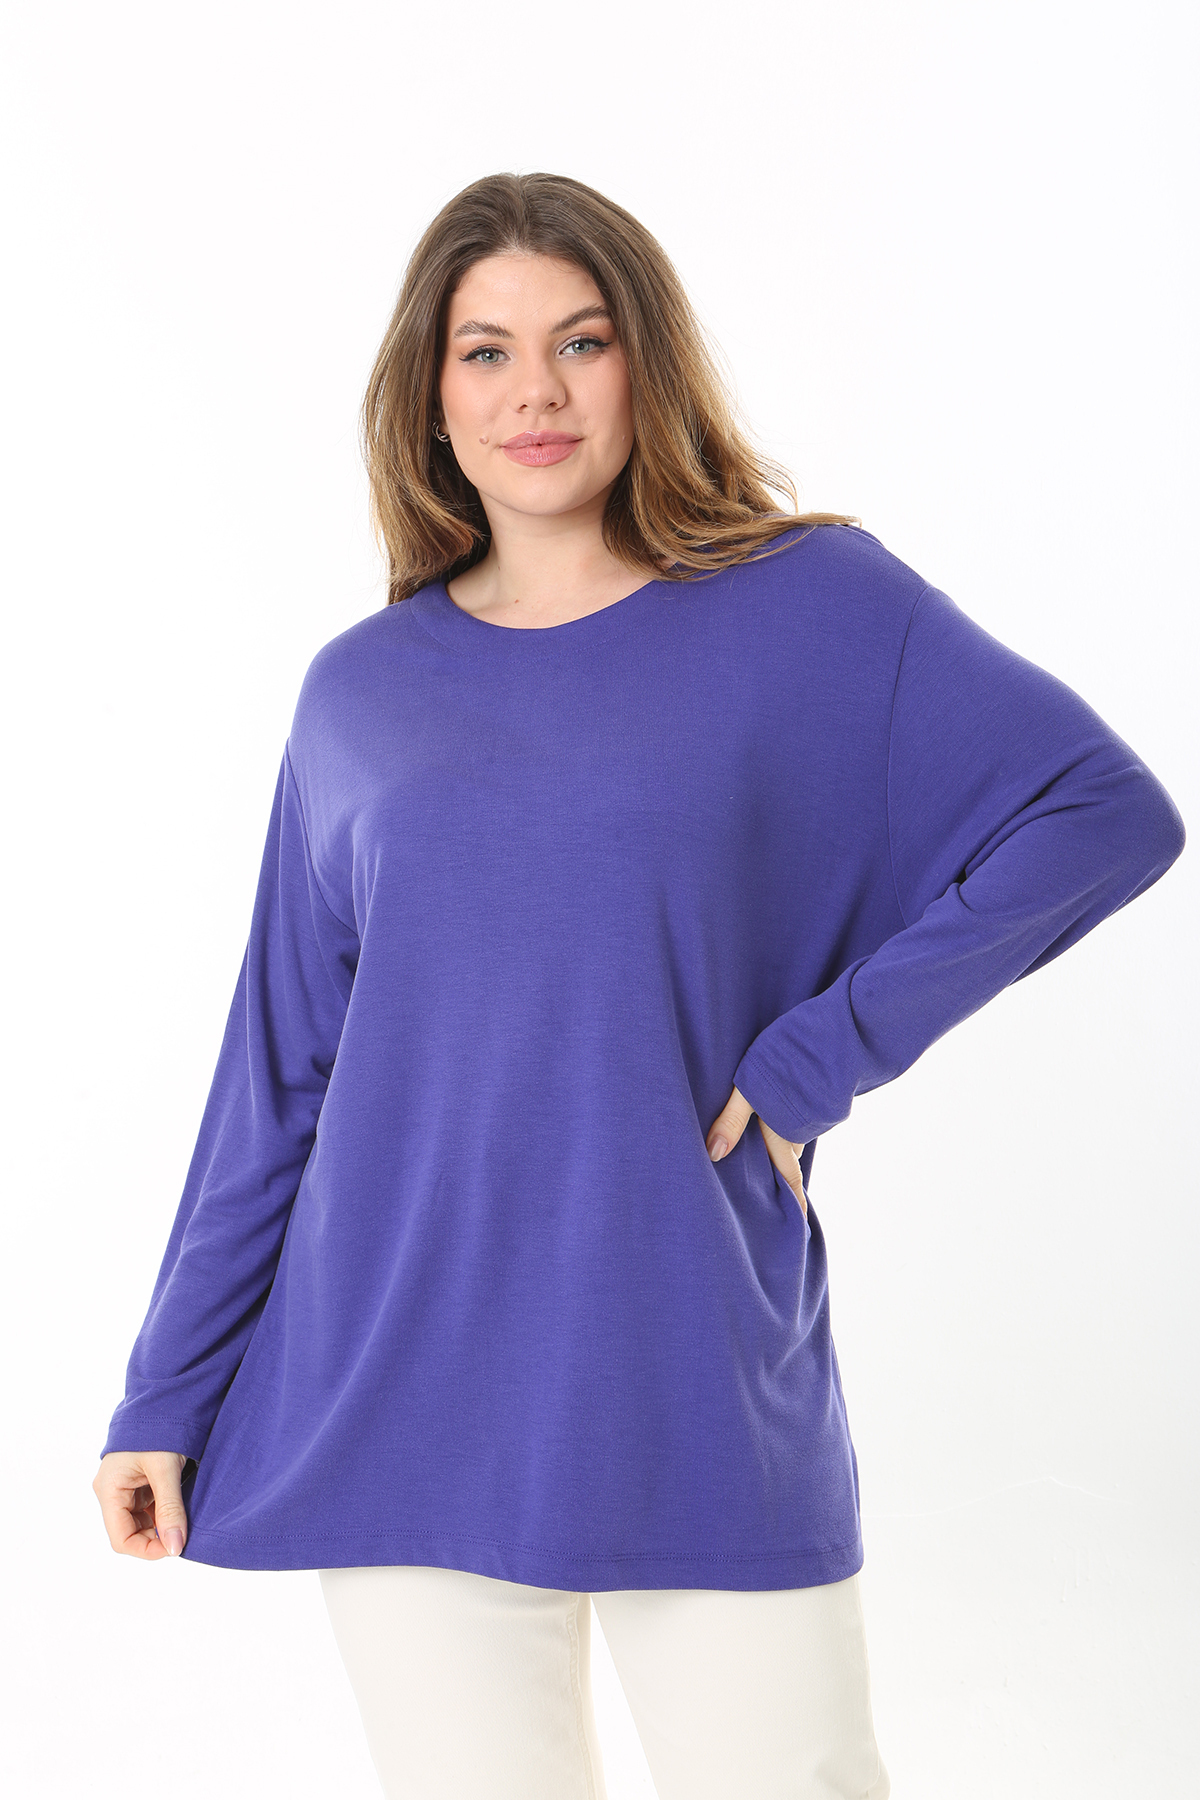 Şans Women's Plus Size Lilac Crew Neck Long Sleeve Blouse